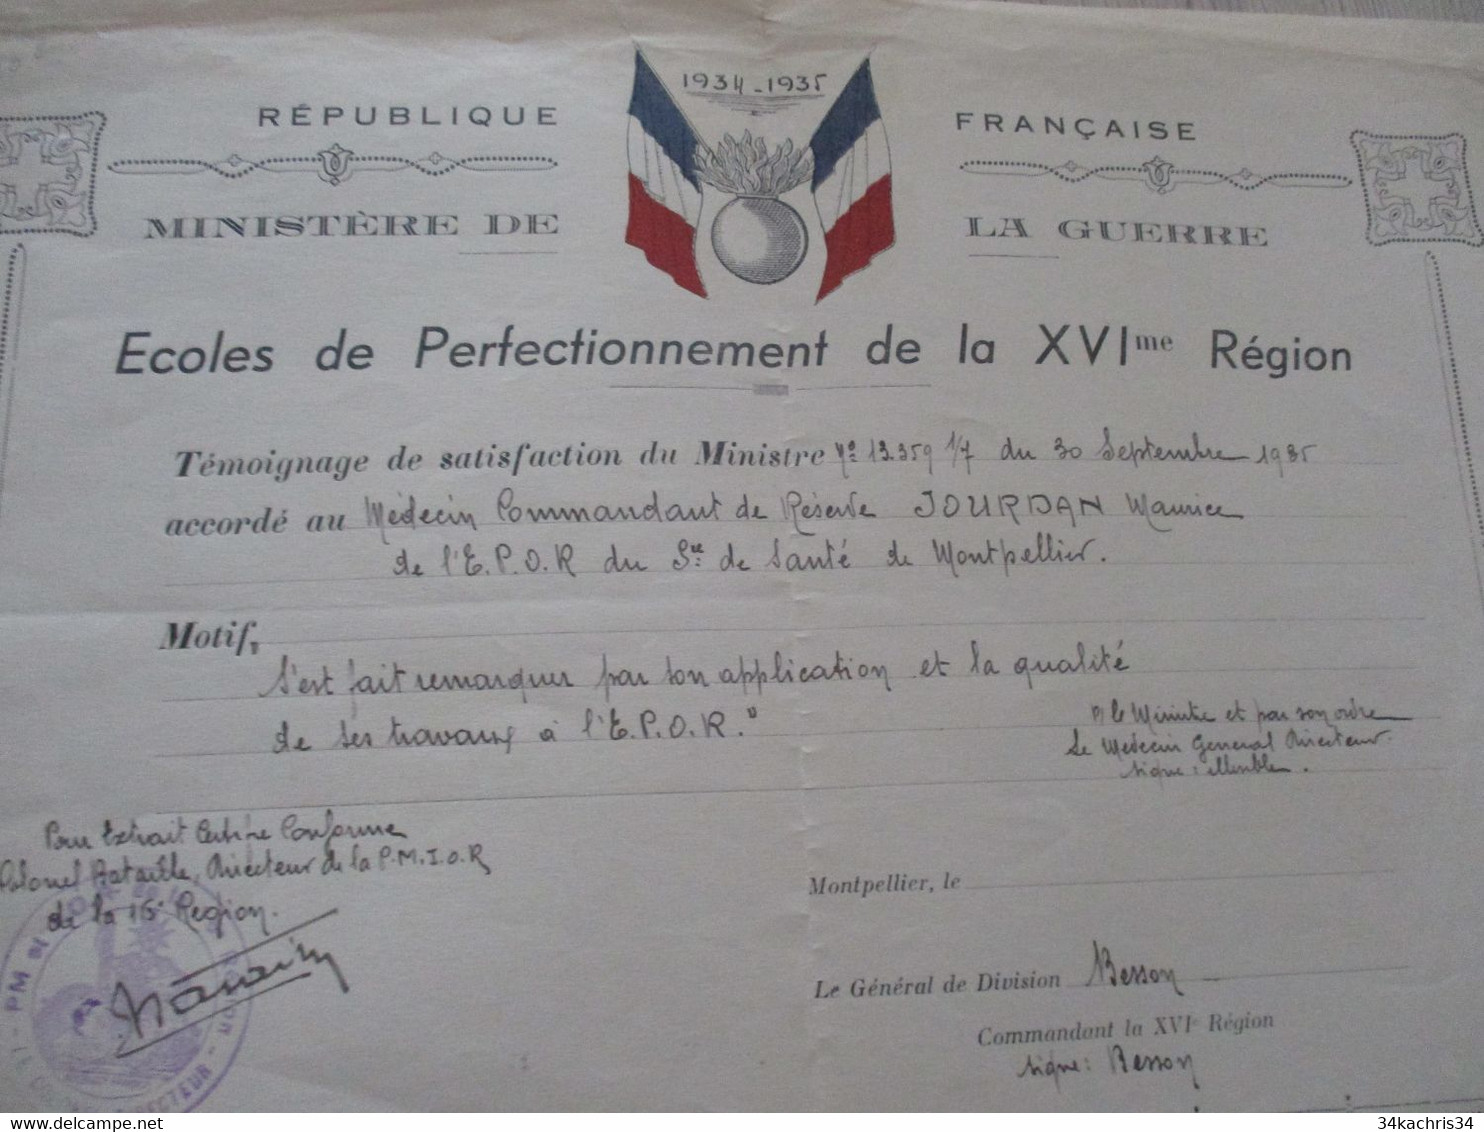 Diplôme Militaire 1934/1935 Ecoles De Perfectionnement De La XVI ème Région Témoignage Stisfacion Jourdan Montpellier - Diploma & School Reports